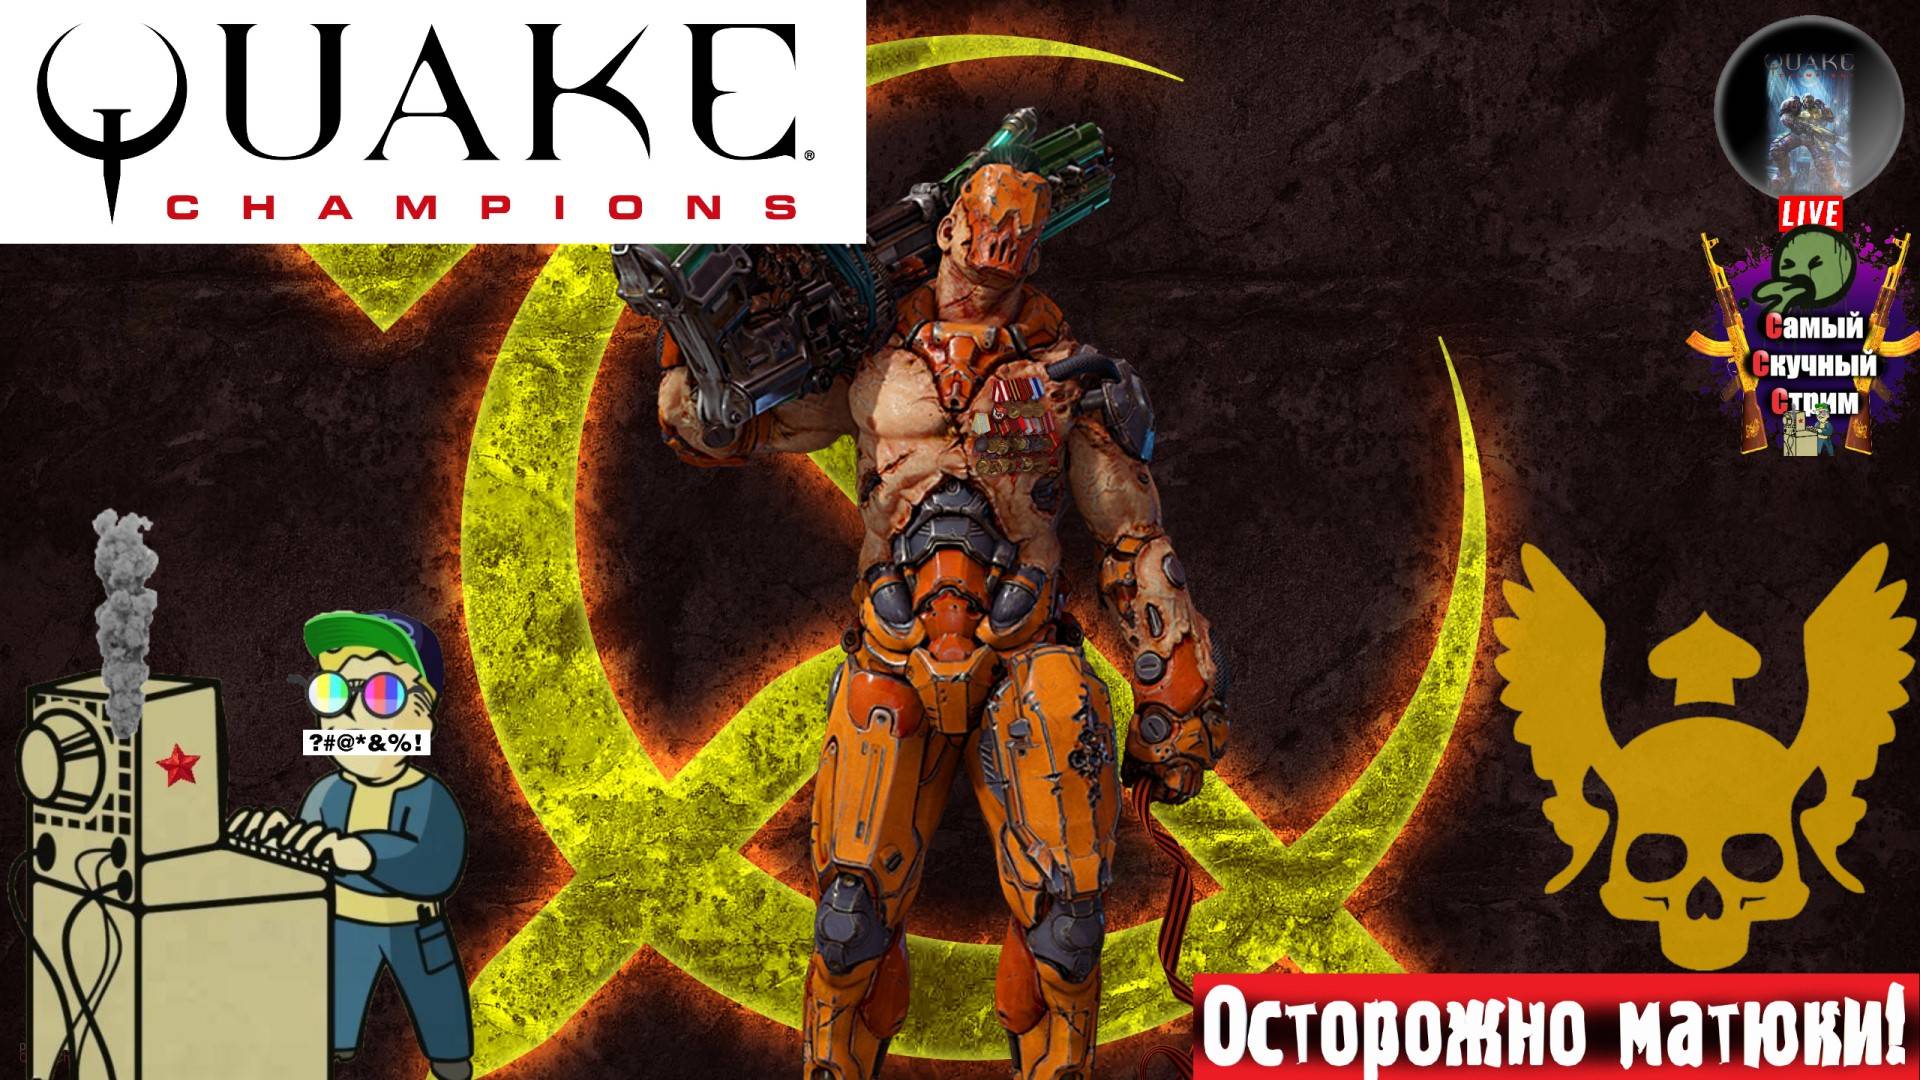 Quake Champions | Квейк Чампионс Квага | Я тебя вижу  #quake #стрим #лифтремонт